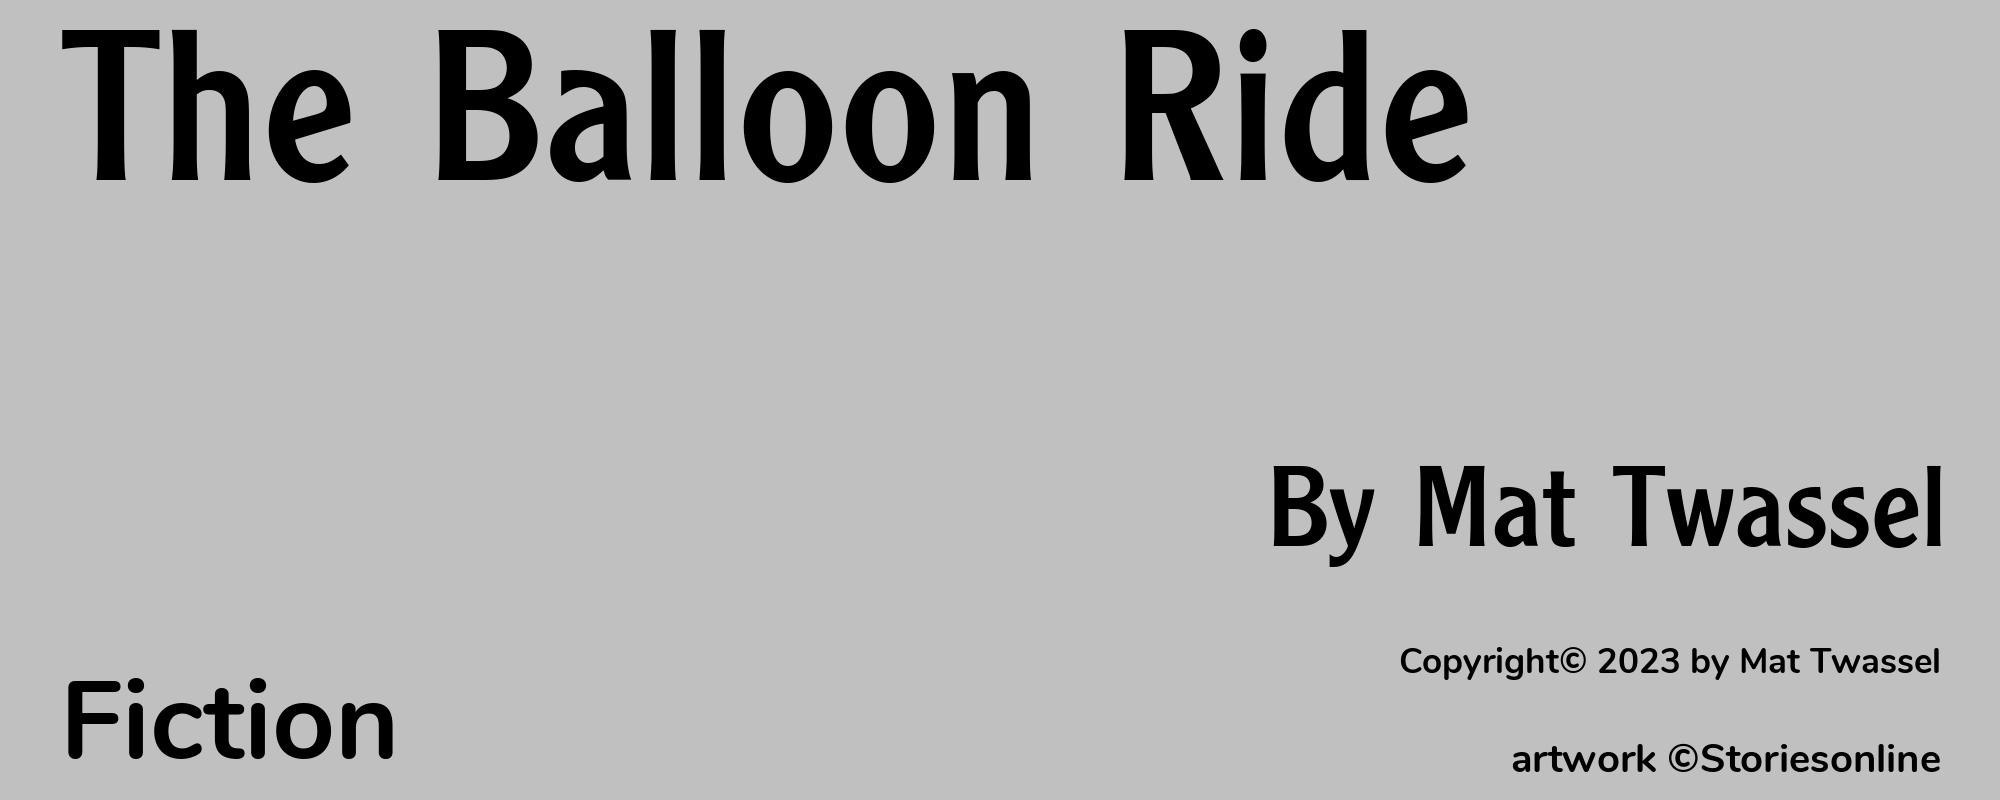 The Balloon Ride - Cover